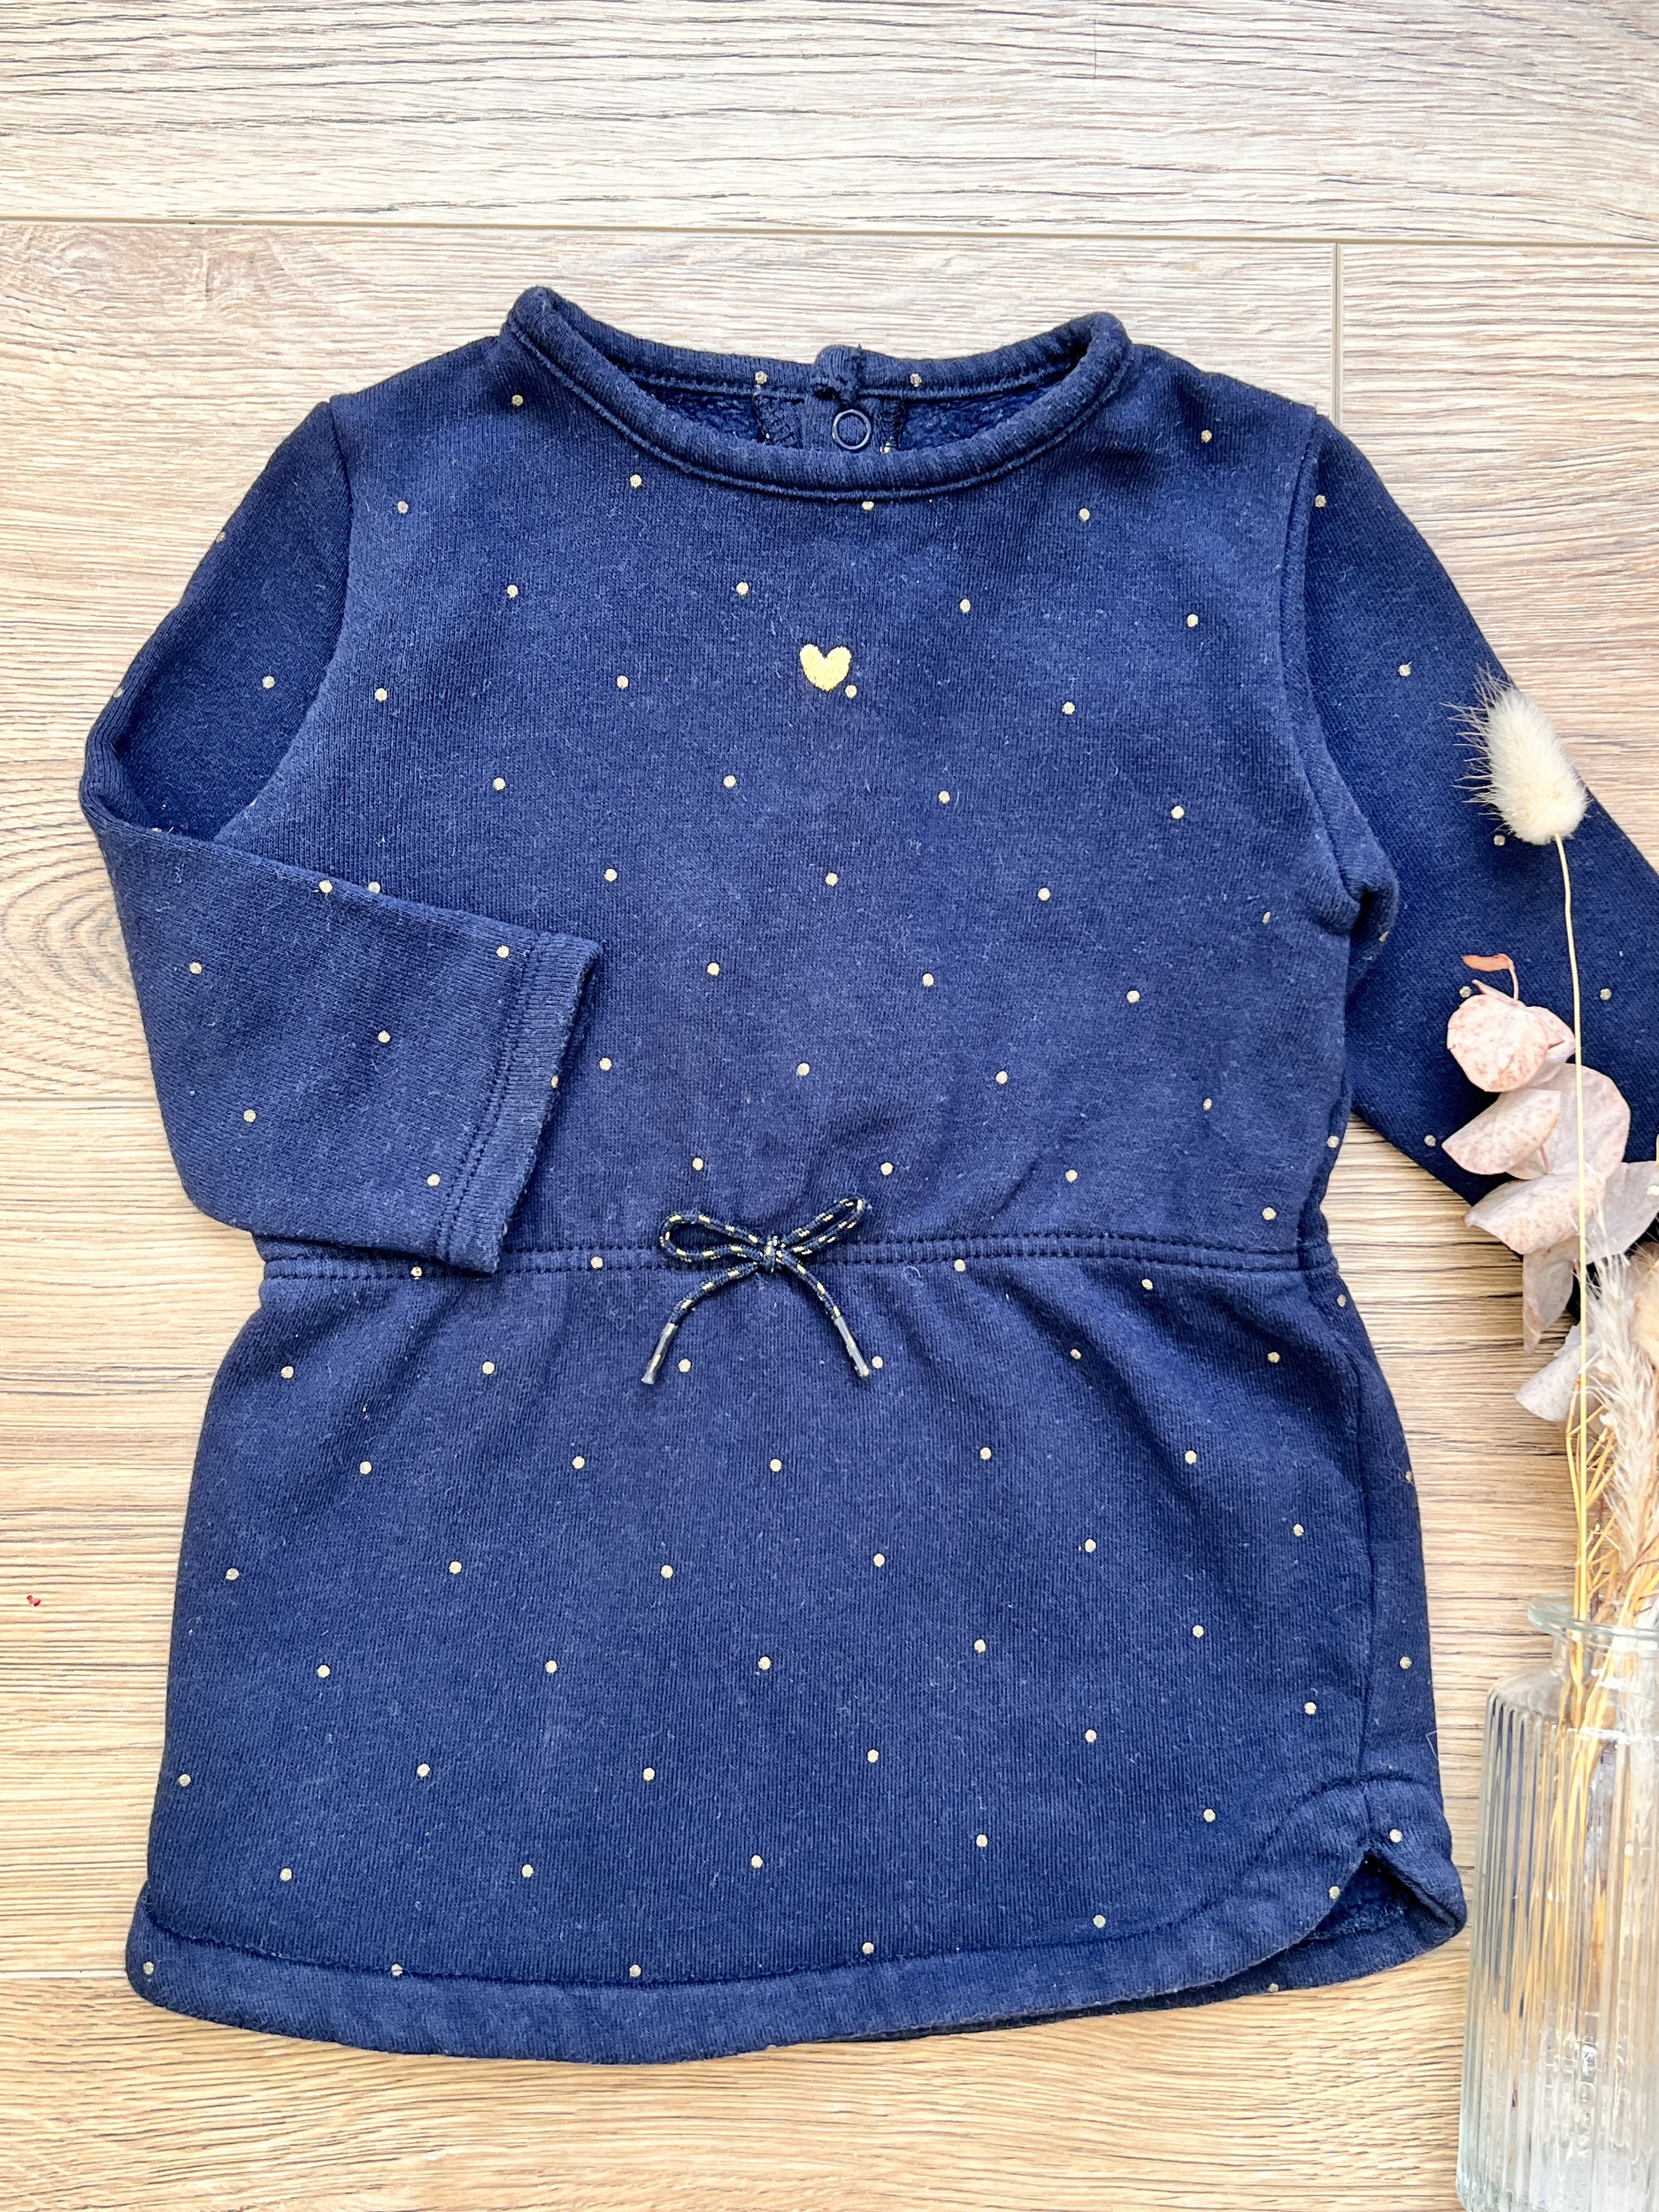 Robe bleue marine et dorée manches longues 100% coton bébé fille - Kiabi - 12 mois 1 an